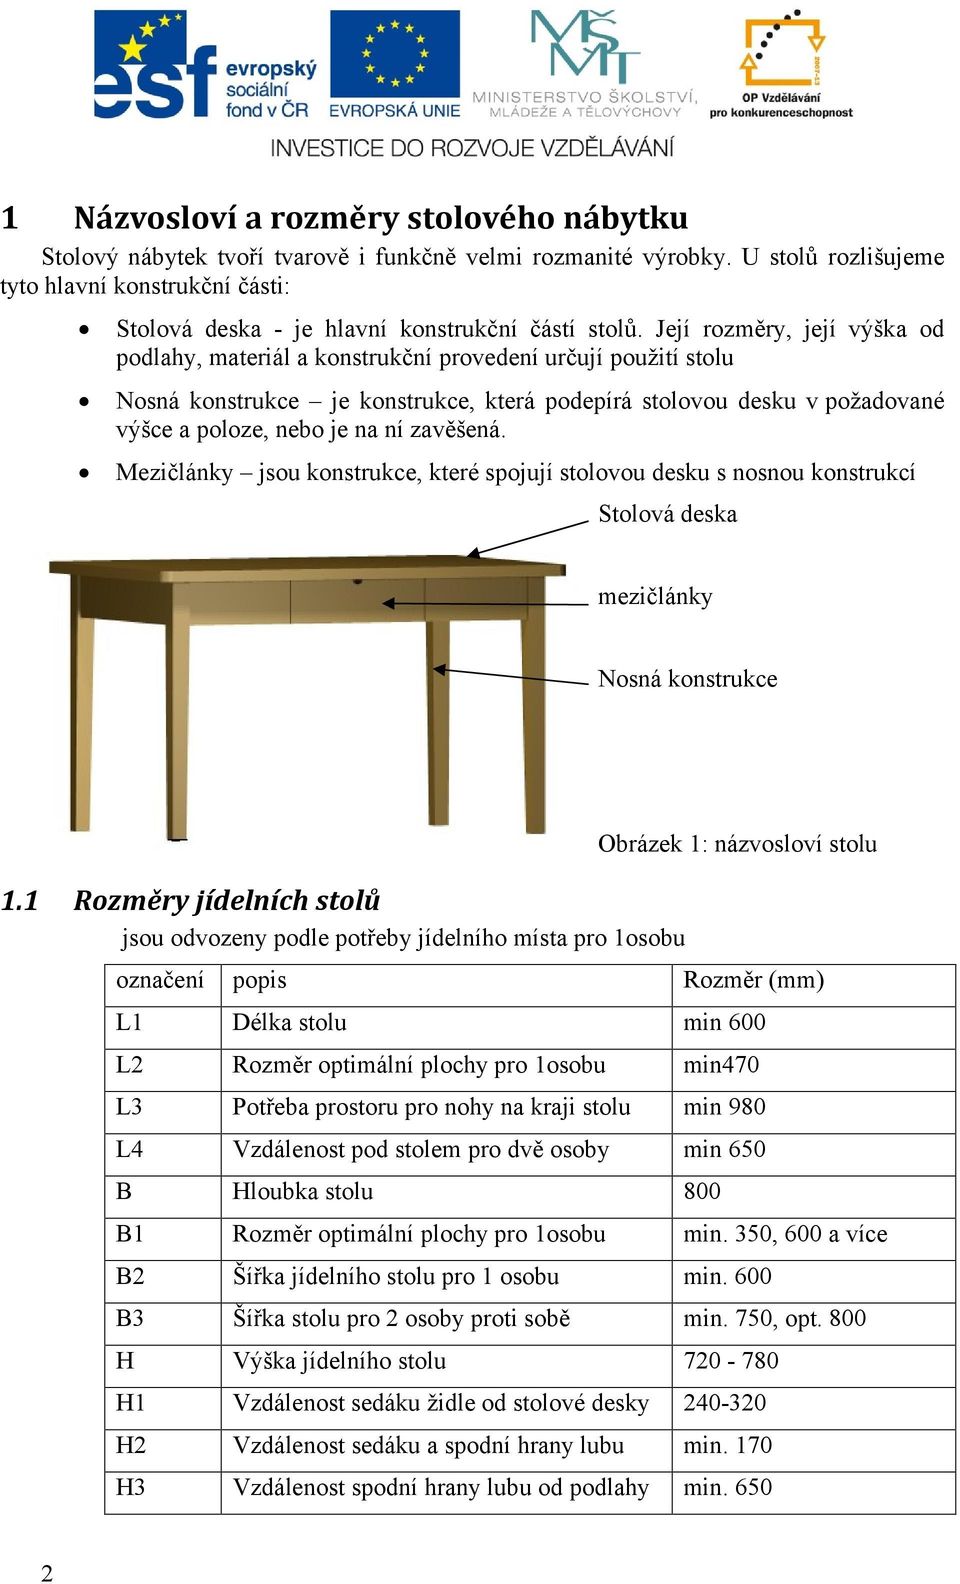 Její rozměry, její výška od podlahy, materiál a konstrukční provedení určují použití stolu Nosná konstrukce je konstrukce, která podepírá stolovou desku v požadované výšce a poloze, nebo je na ní